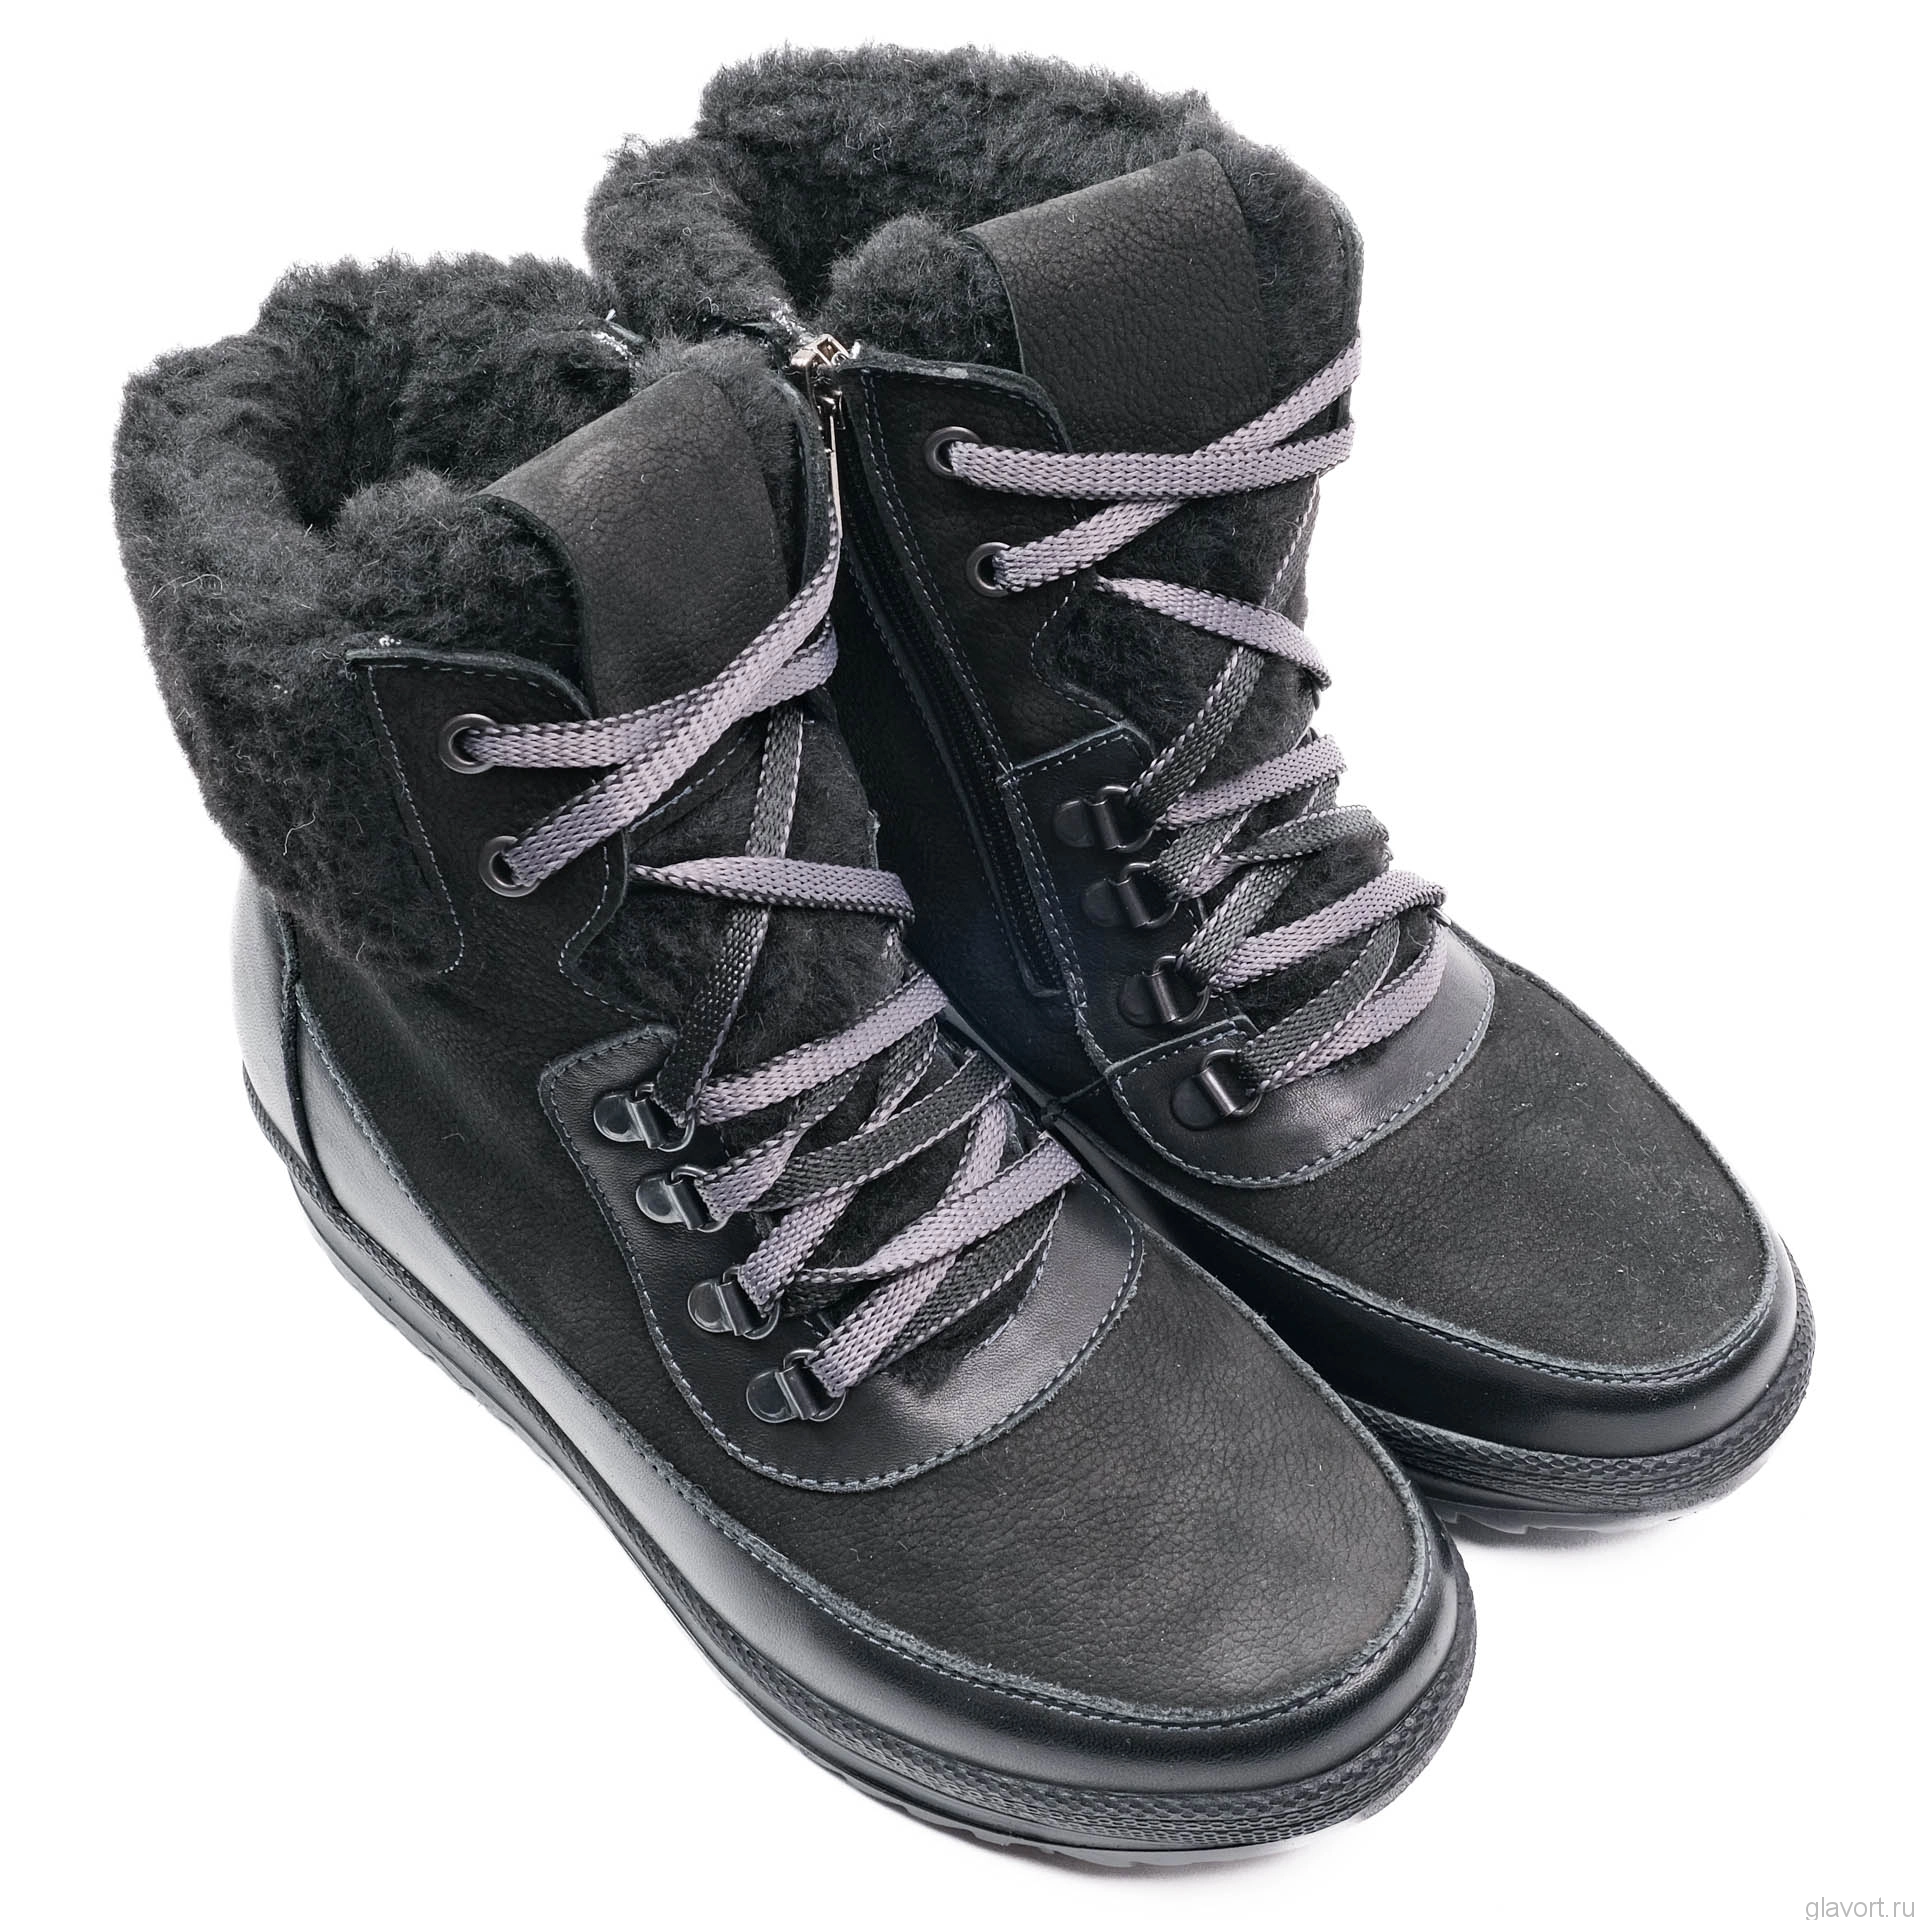 Dr.Spektor ботинки женские зимние, Ш0417-Н/К, Черный Ш0417-Н/К-black-37,купить Dr.Spektor ботинки женские зимние, Ш0417-Н/К, Черный